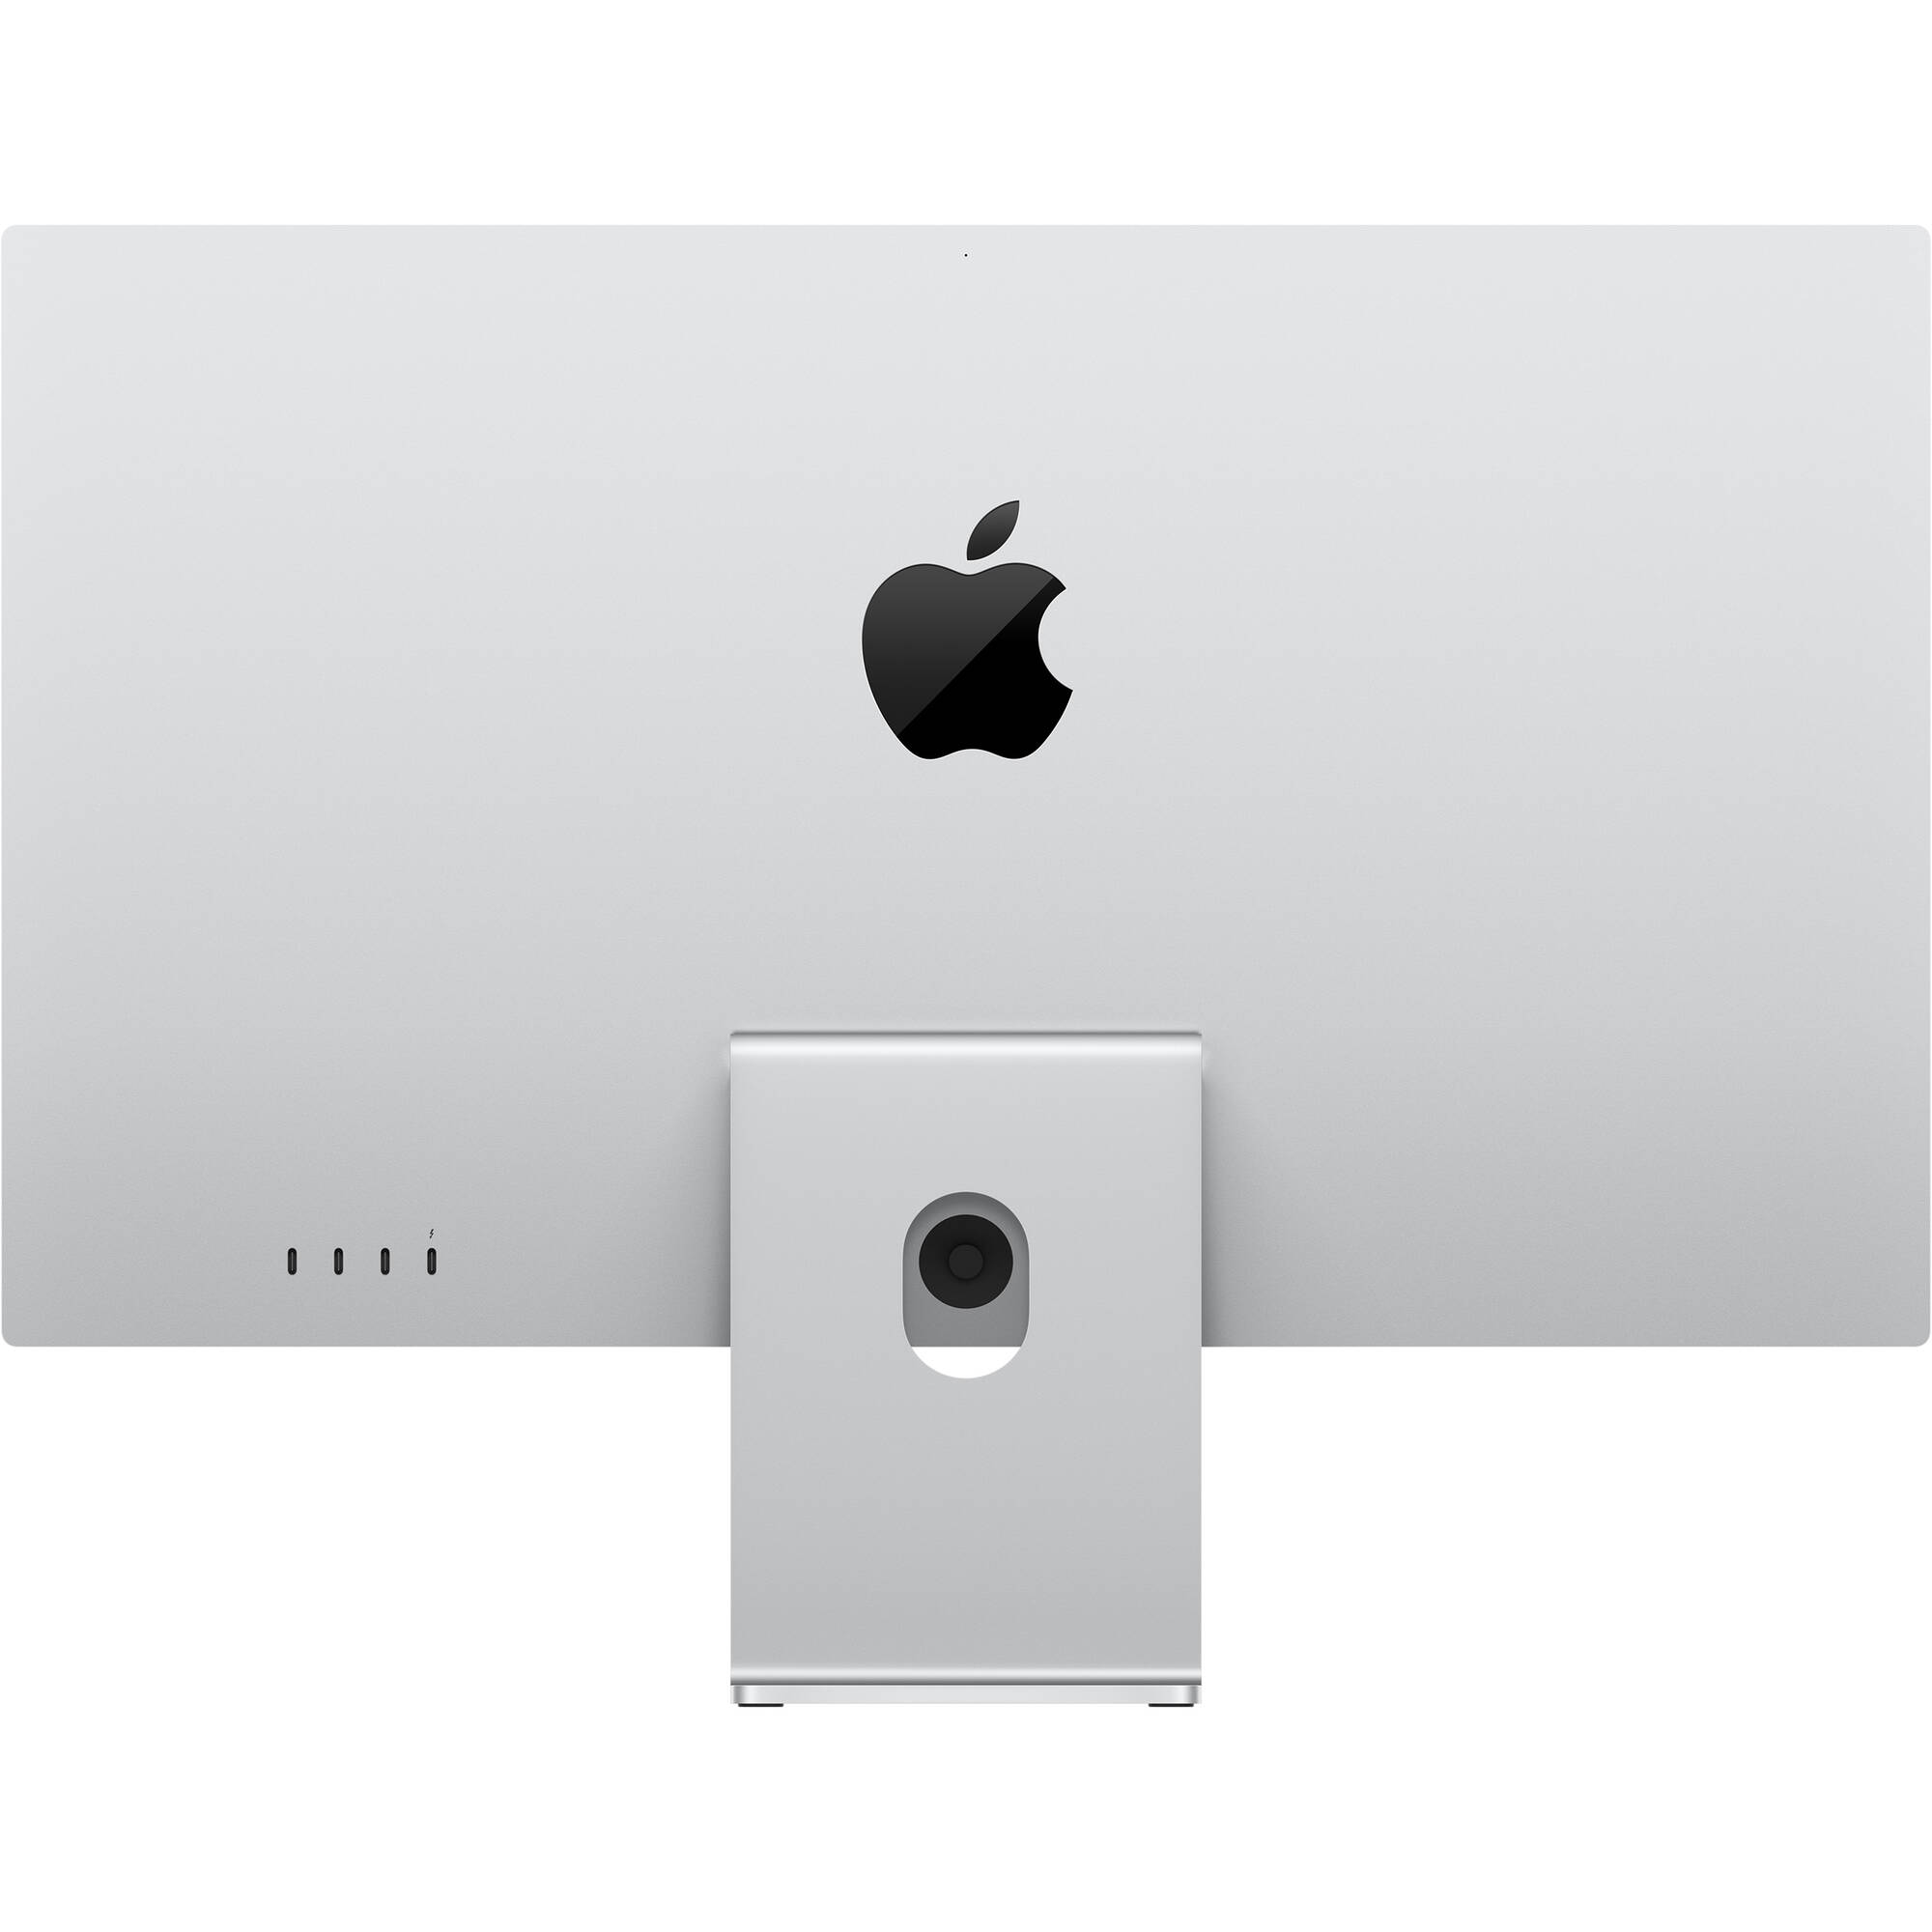 Pantalla de estudio Apple 27 "(soporte ajustable de vidrio, inclinación y altura estándar)